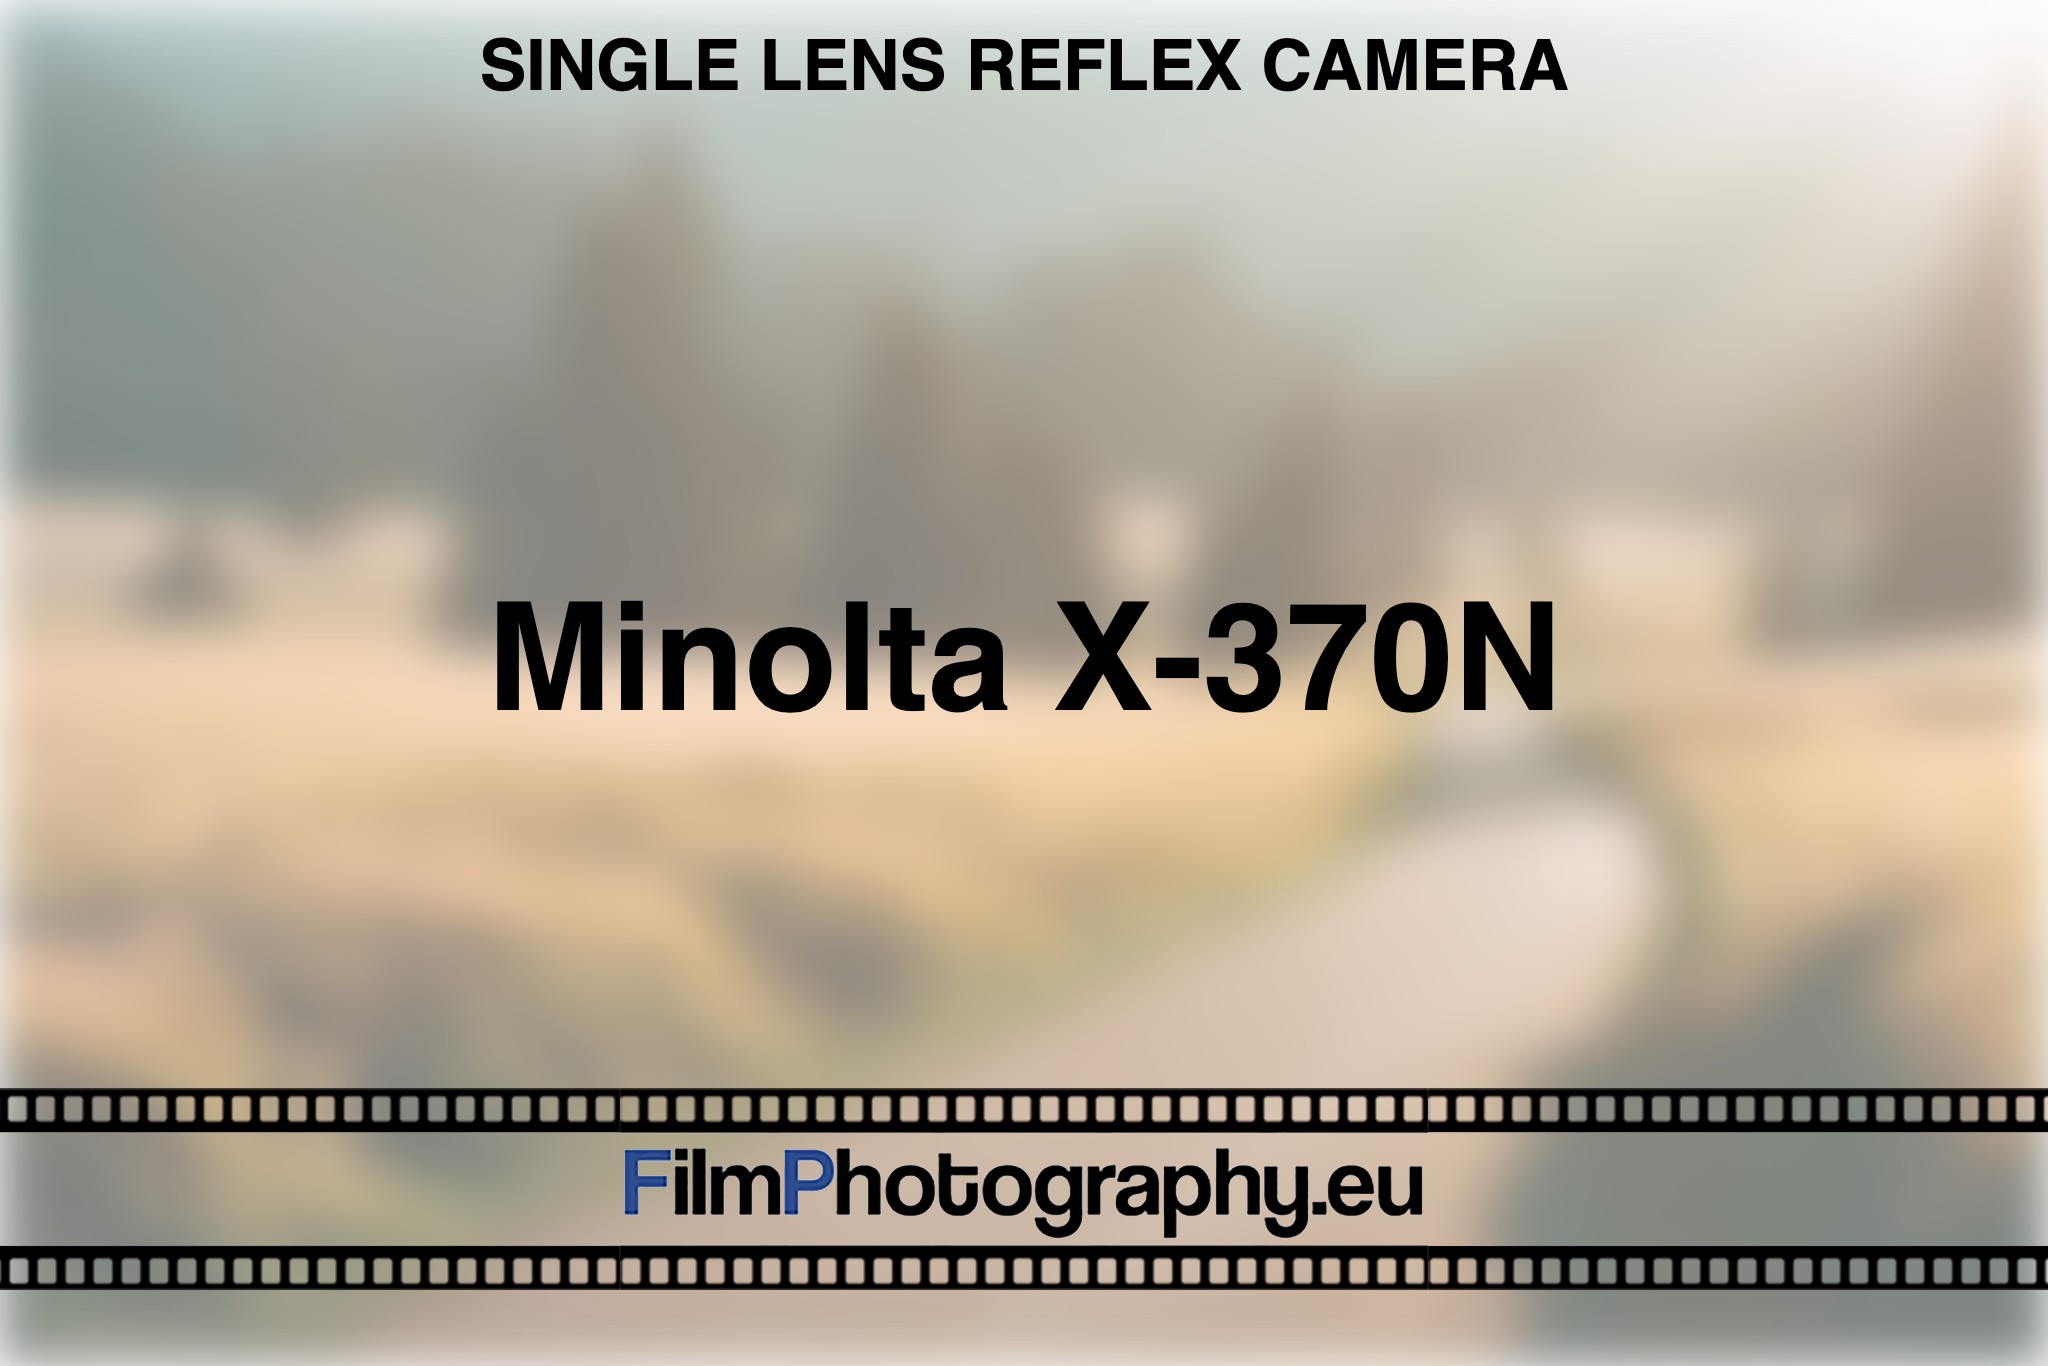 minolta-x-370n-single-lens-reflex-camera-bnv